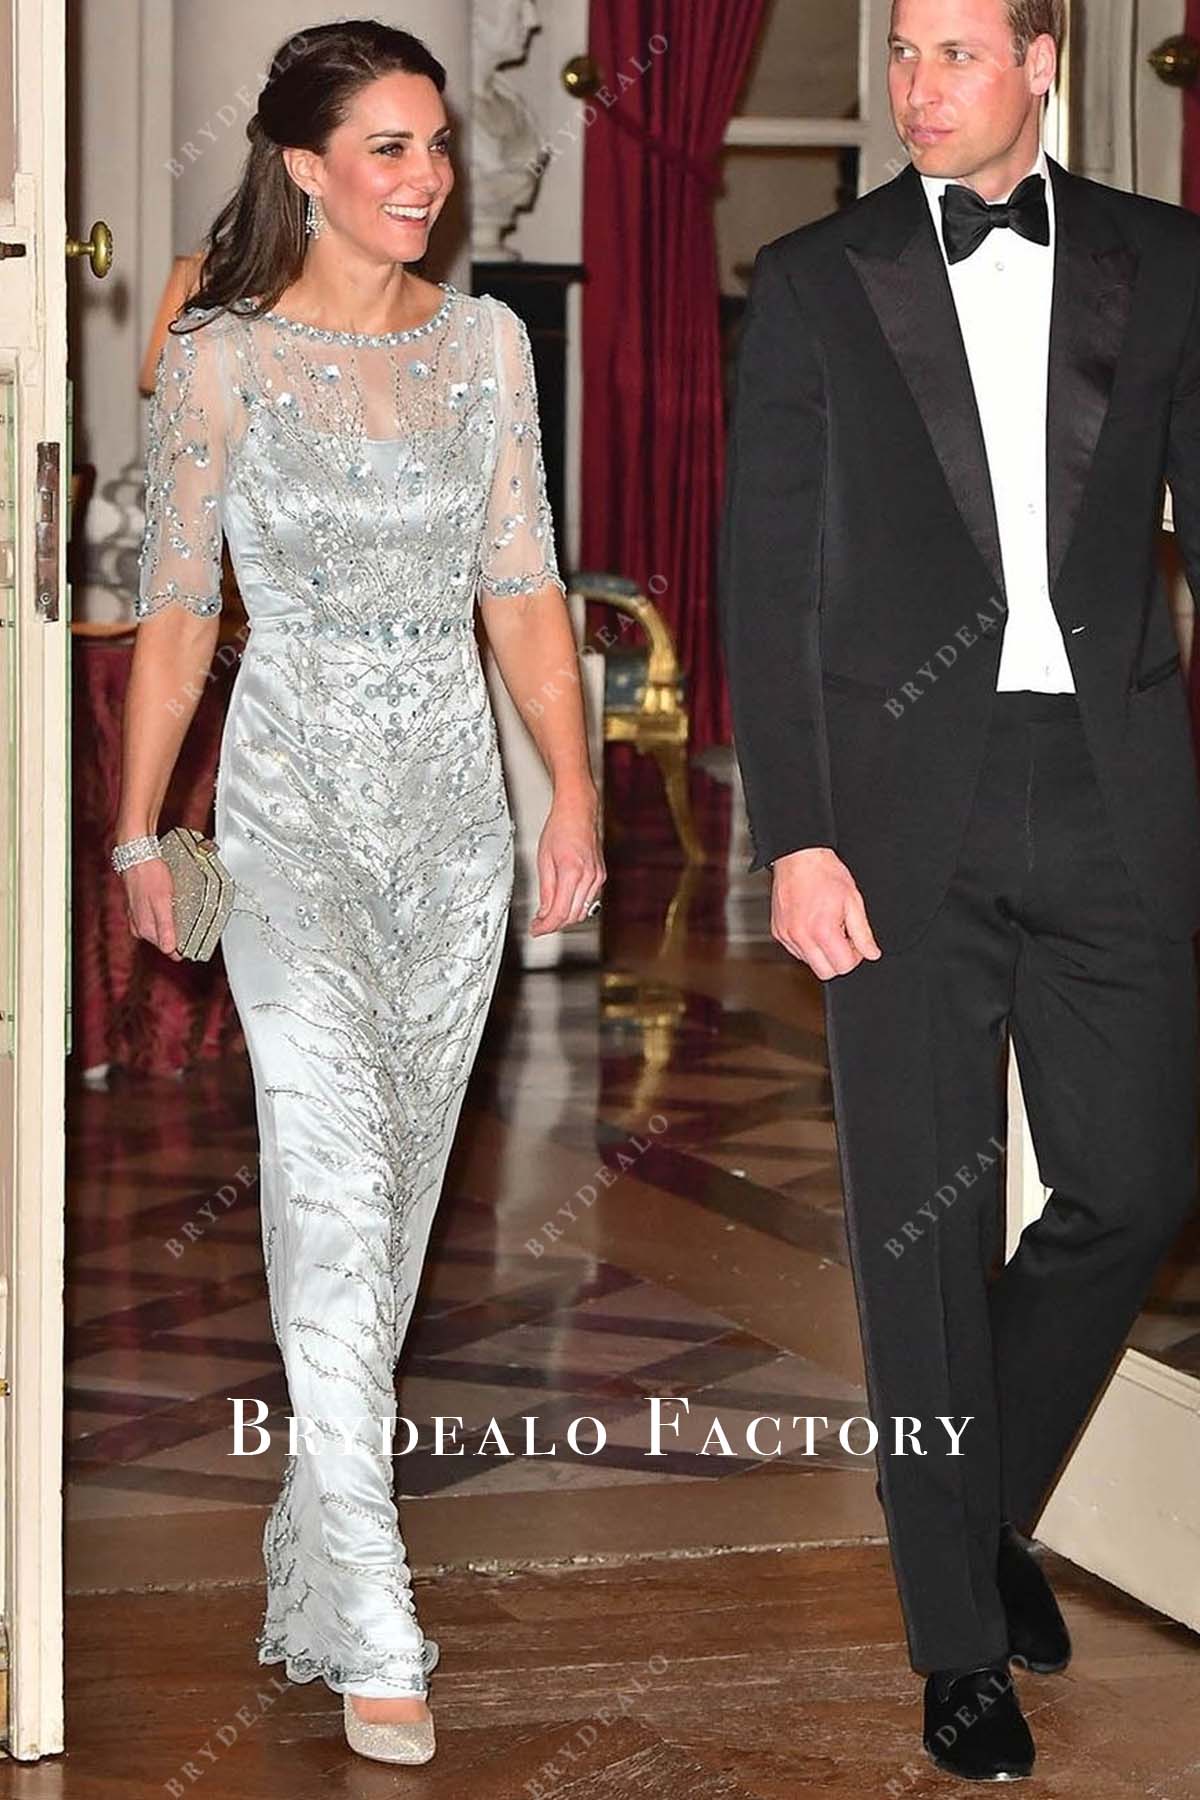 Kate Middleton Silver Sequin Evening Dress 2017 Paris Trip